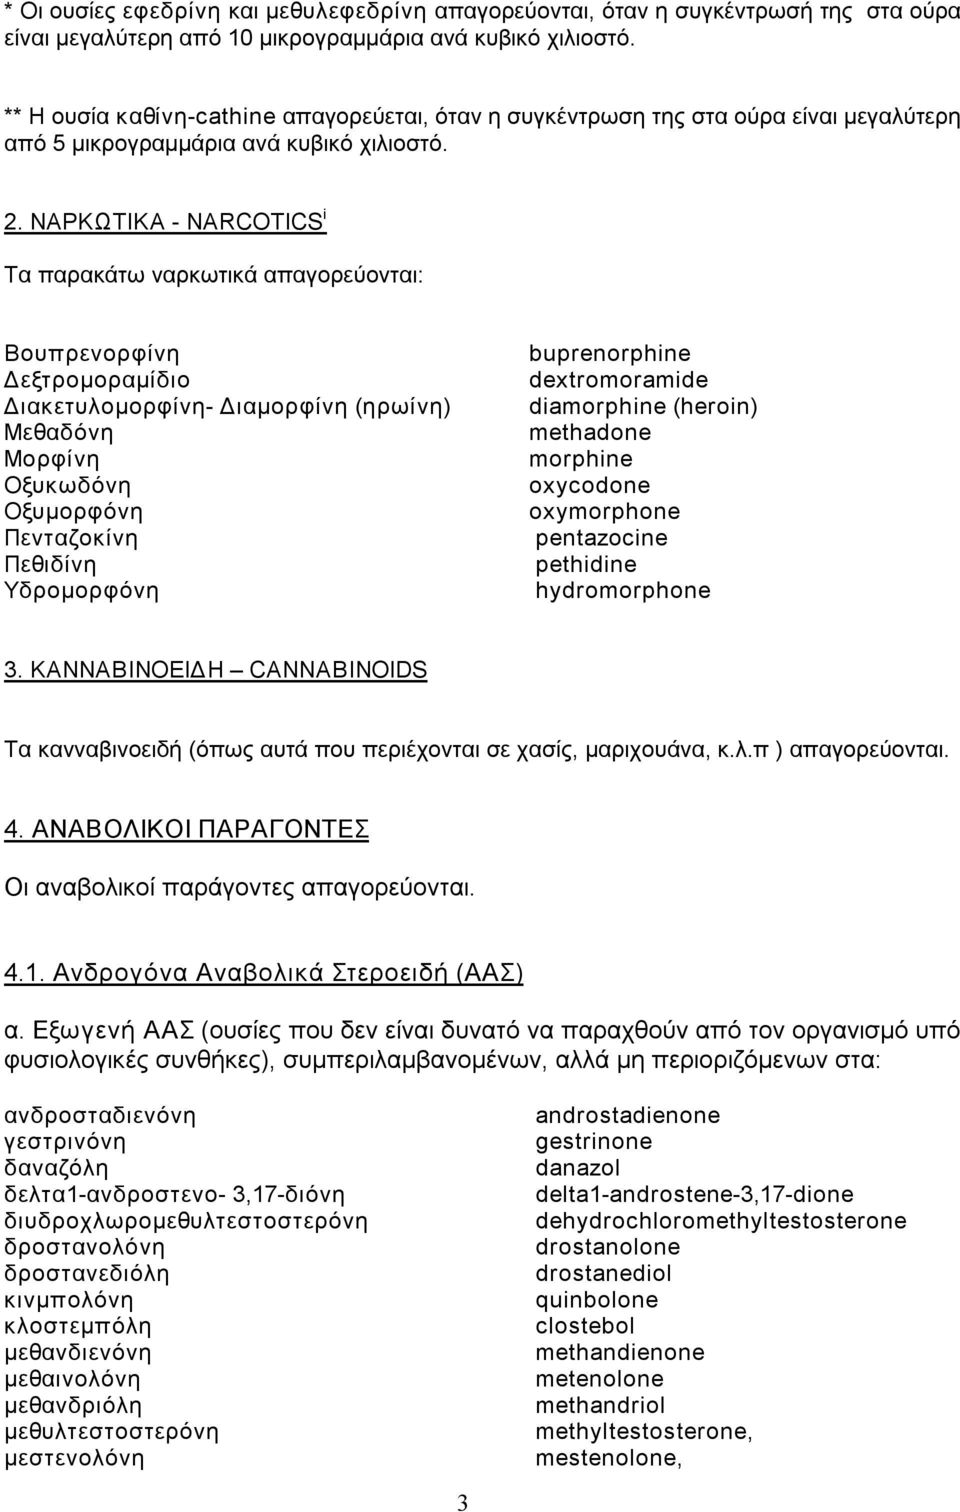 ΝΑΡΚΩΤΙΚΑ NARCOTICS i Τα παρακάτω ναρκωτικά απαγορεύονται: Βουπρενορφίνη Δεξτρομοραμίδιο Διακετυλομορφίνη Διαμορφίνη (ηρωίνη) Μεθαδόνη Μορφίνη Οξυκωδόνη Οξυμορφόνη Πενταζοκίνη Πεθιδίνη Υδρομορφόνη